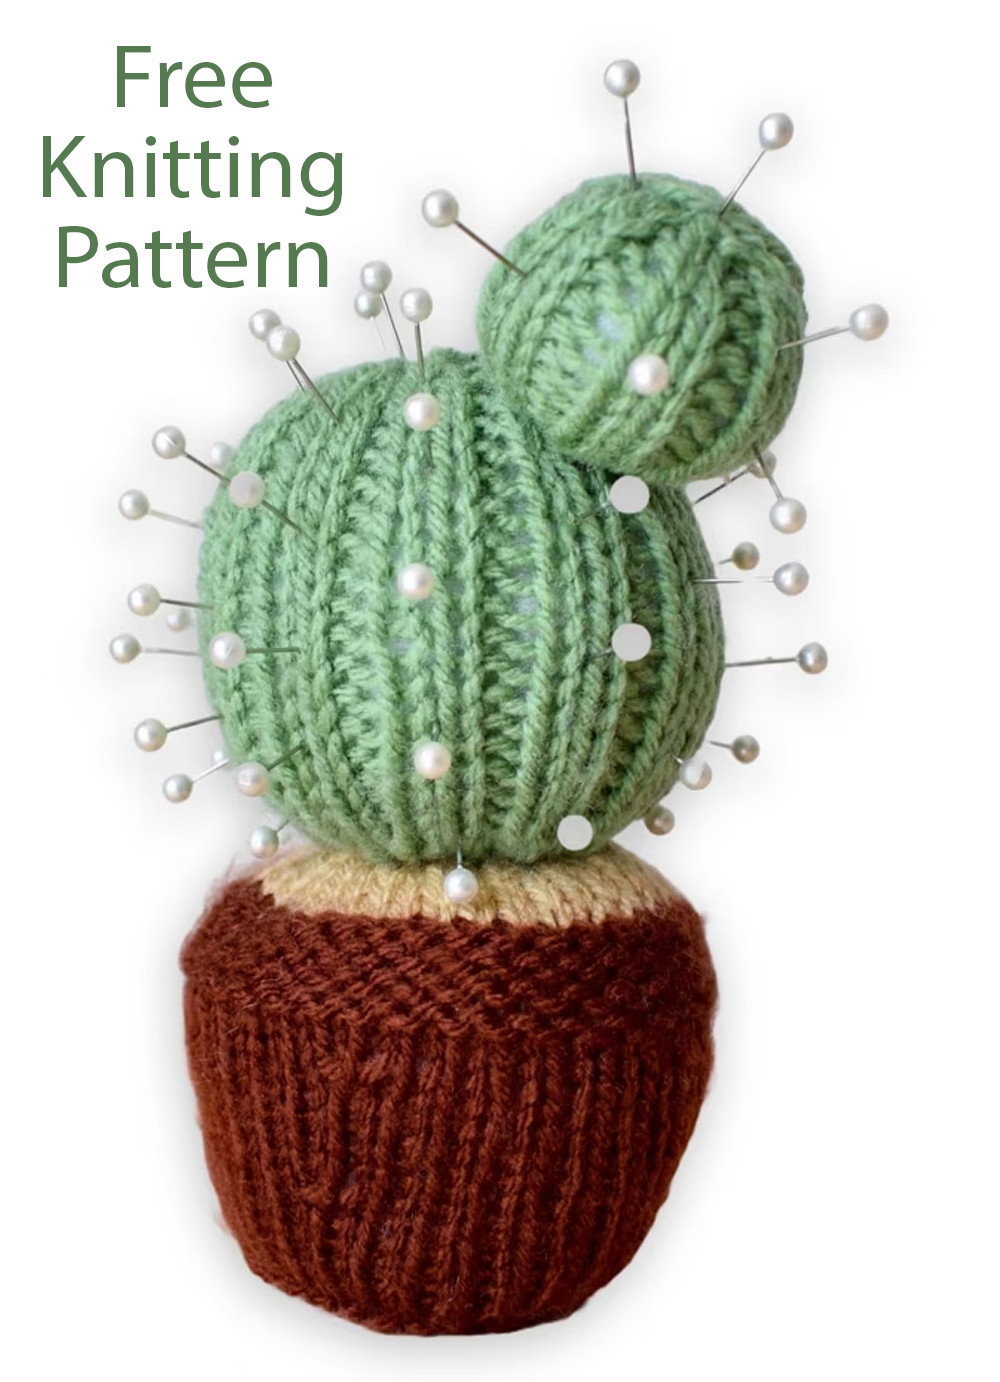 Cactus Pincushion Free Knitting Pattern